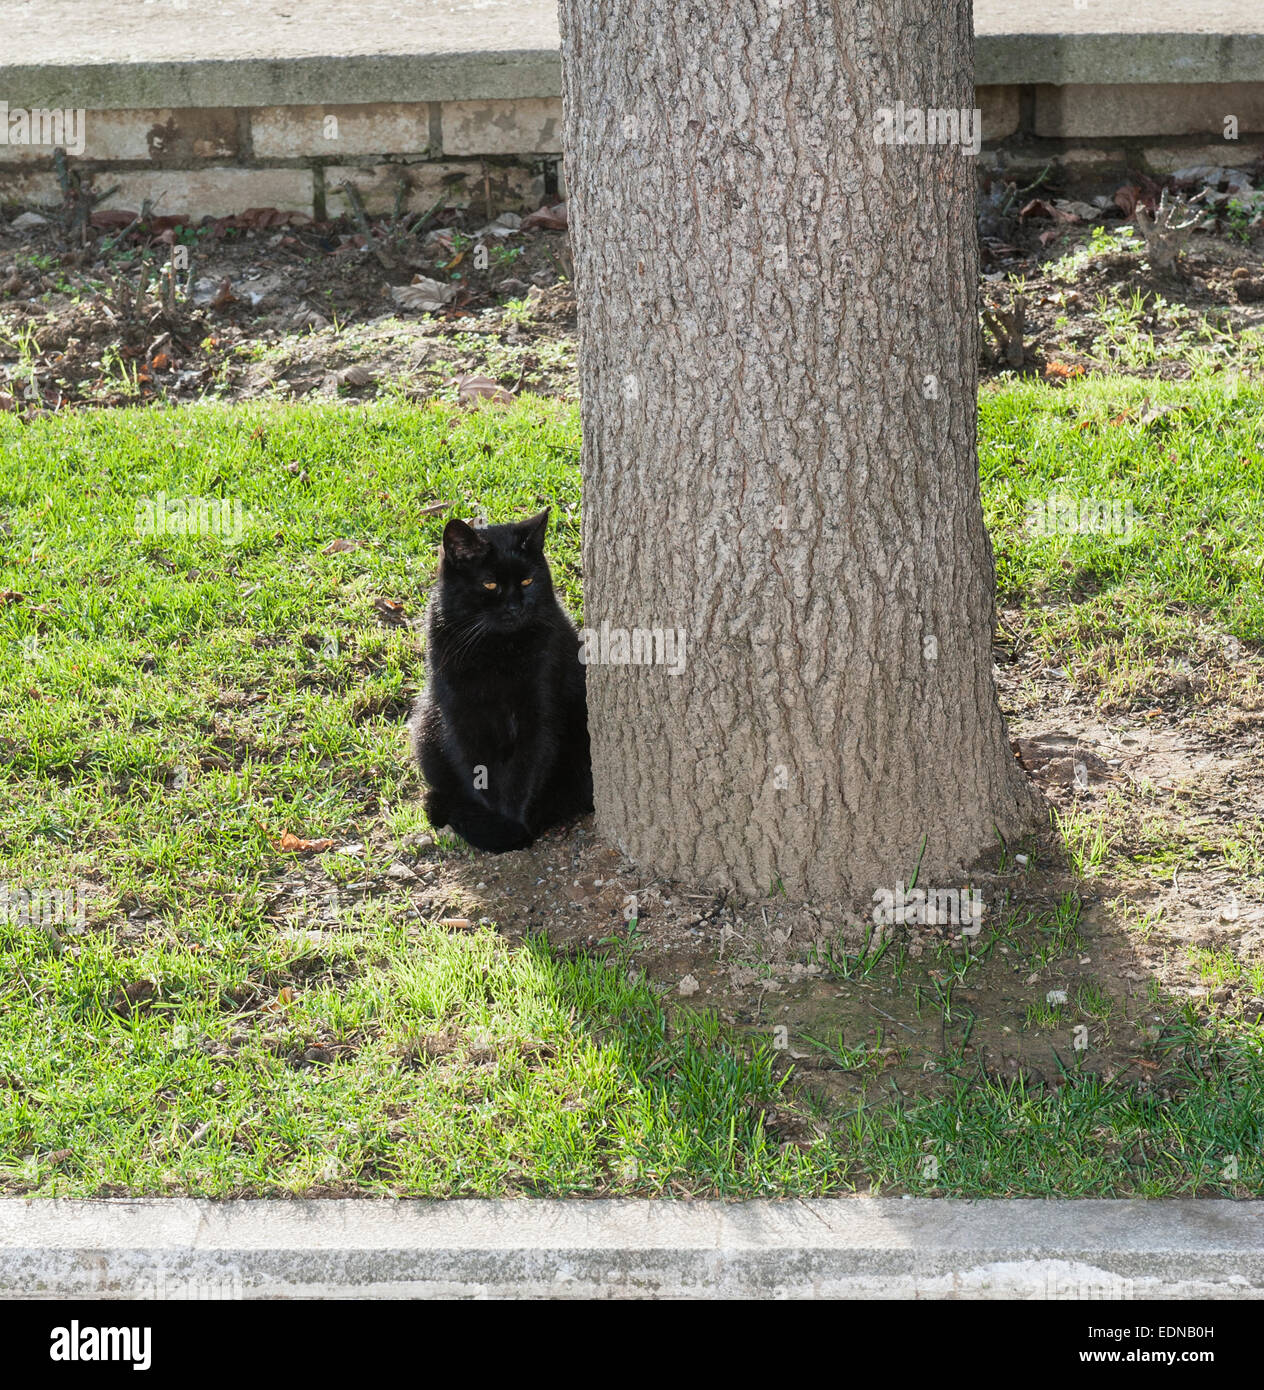 Nero gatto domestico seduto in un parco vicino al tronco di albero Foto Stock